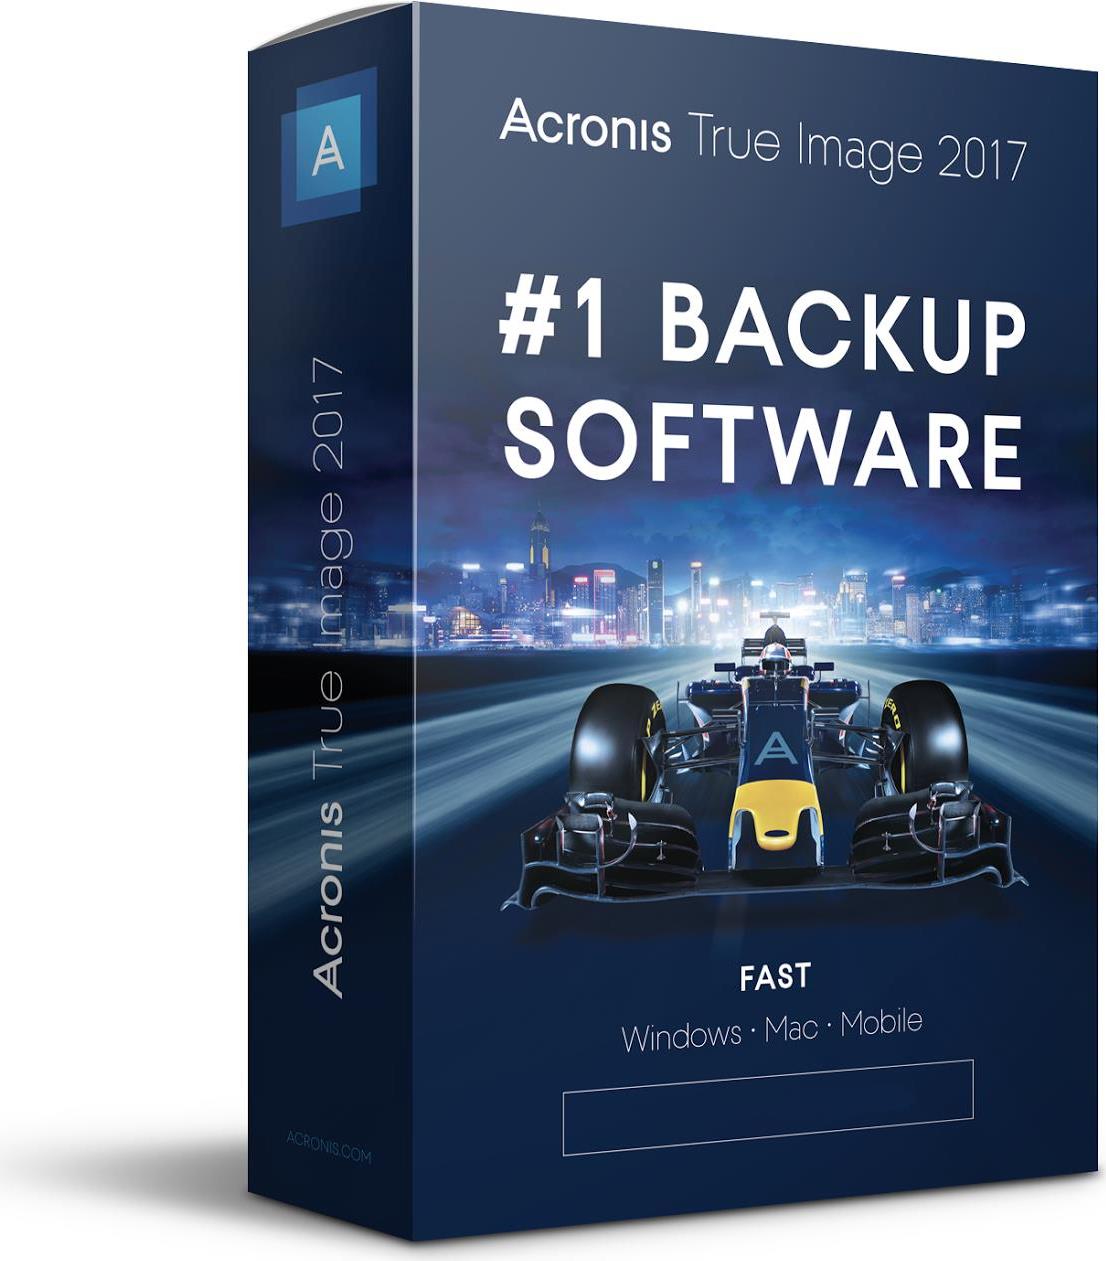 Acronis True Image - Abonnement-Lizenz (1 Jahr) - 3 Computer, 50 GB Cloud-Speicherplatz - Win, Mac, Android, iOS